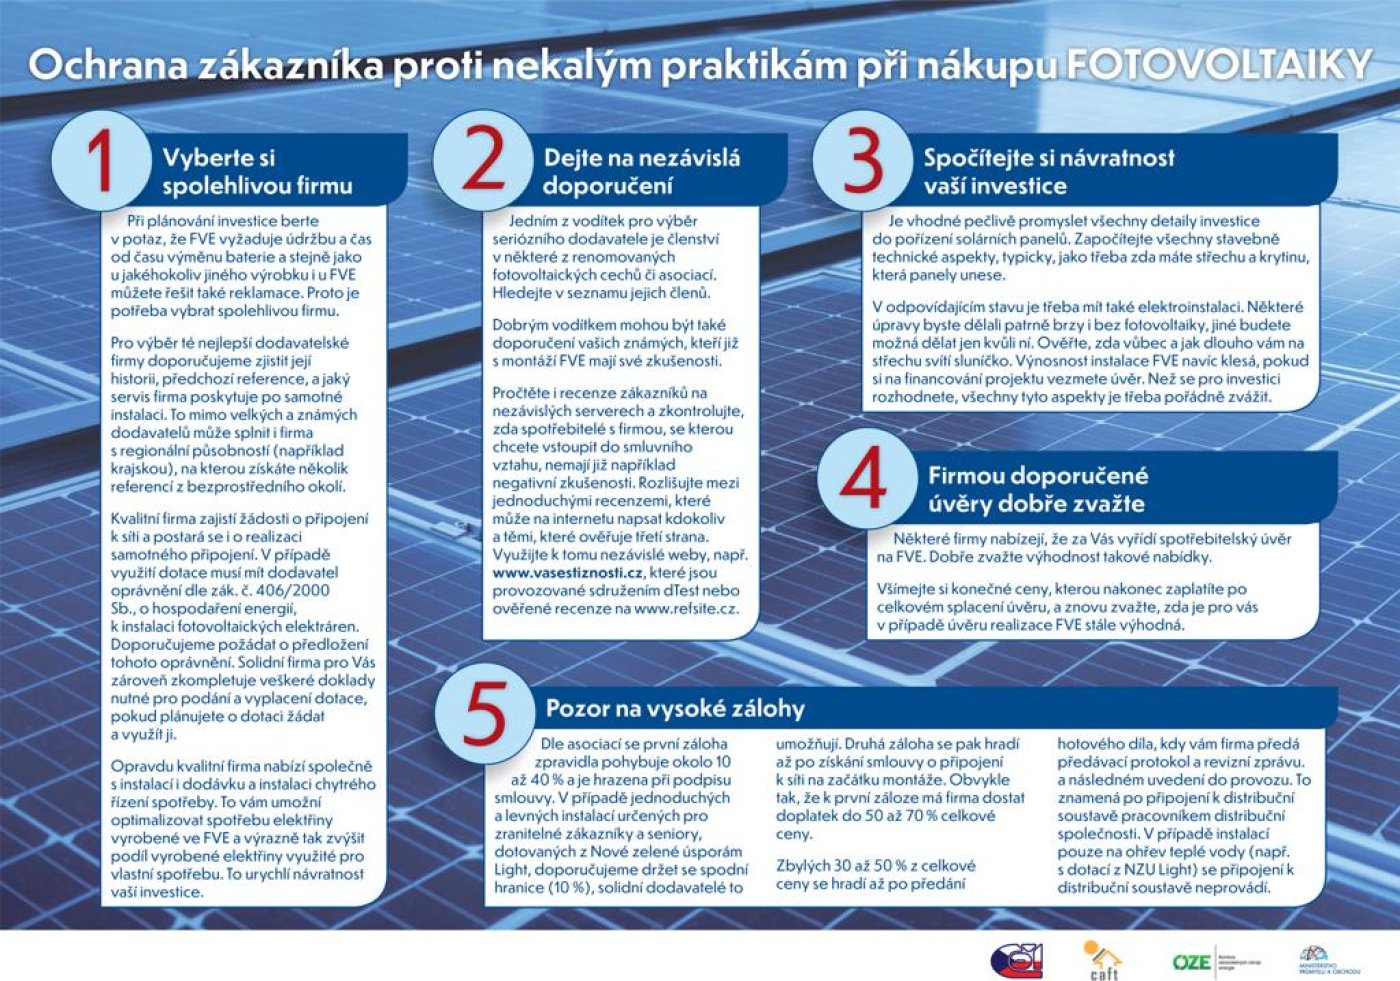 Manuál na ochranu zákazníků proti nekalým praktikám při nákupu fotovoltaiky